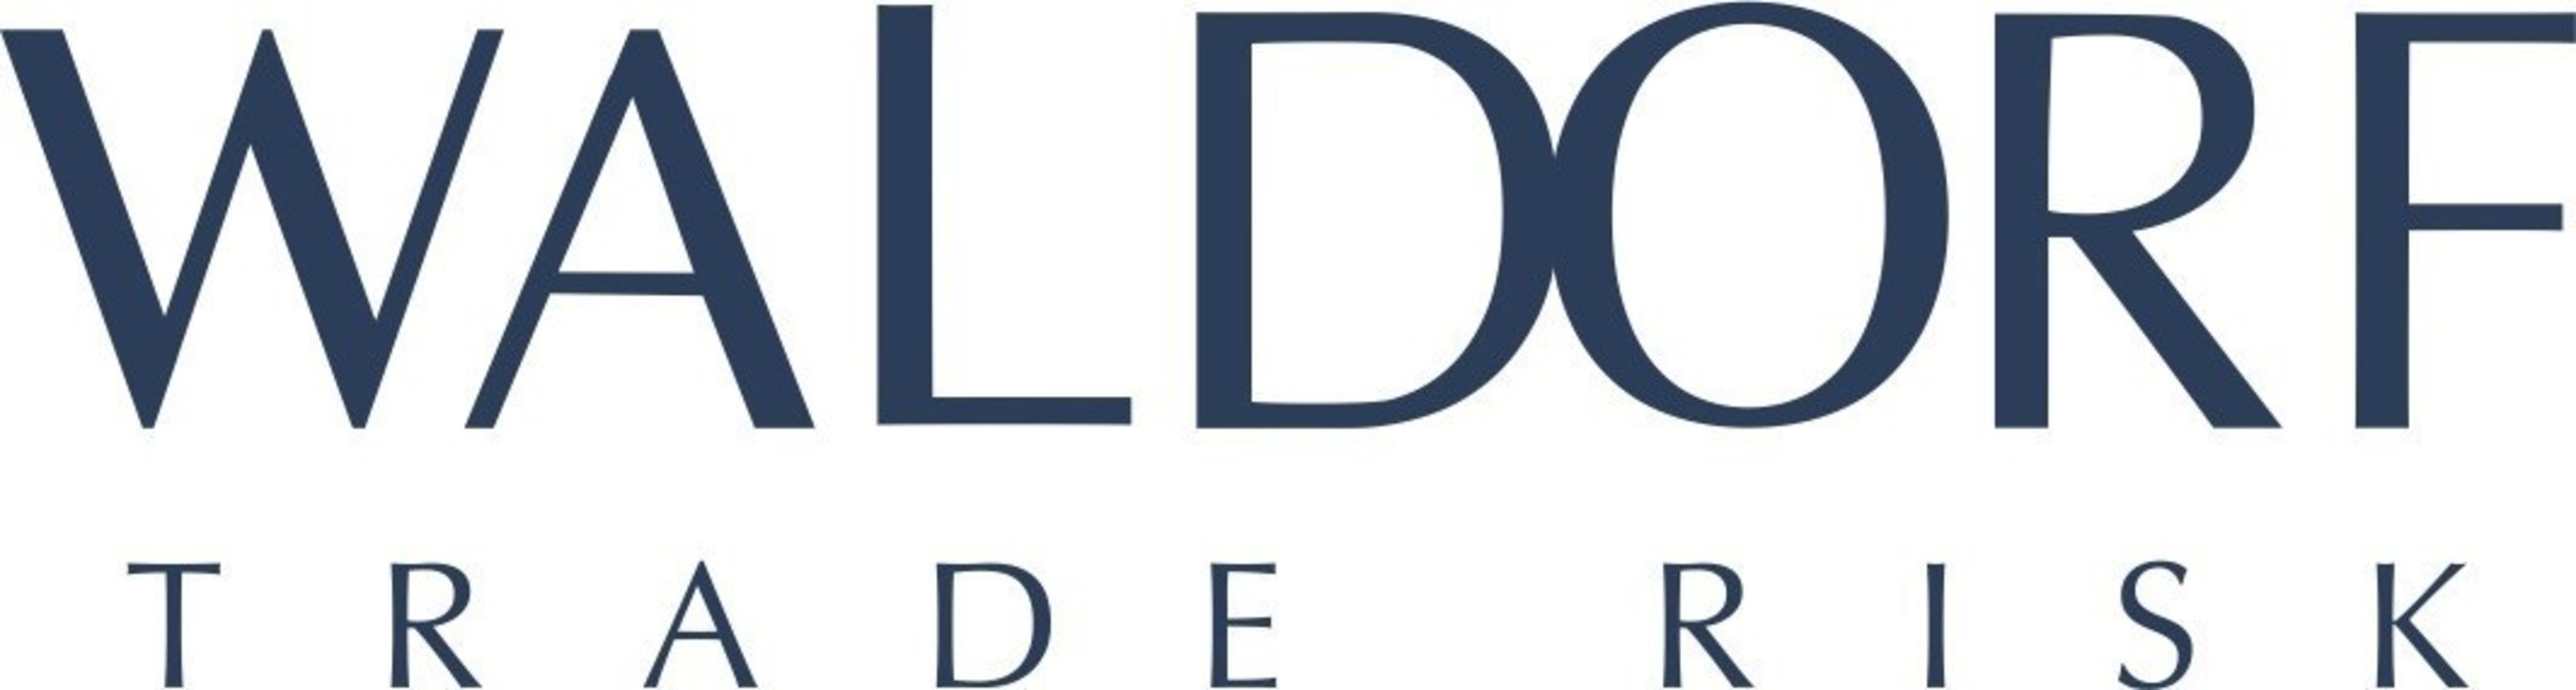 Waldorf logo